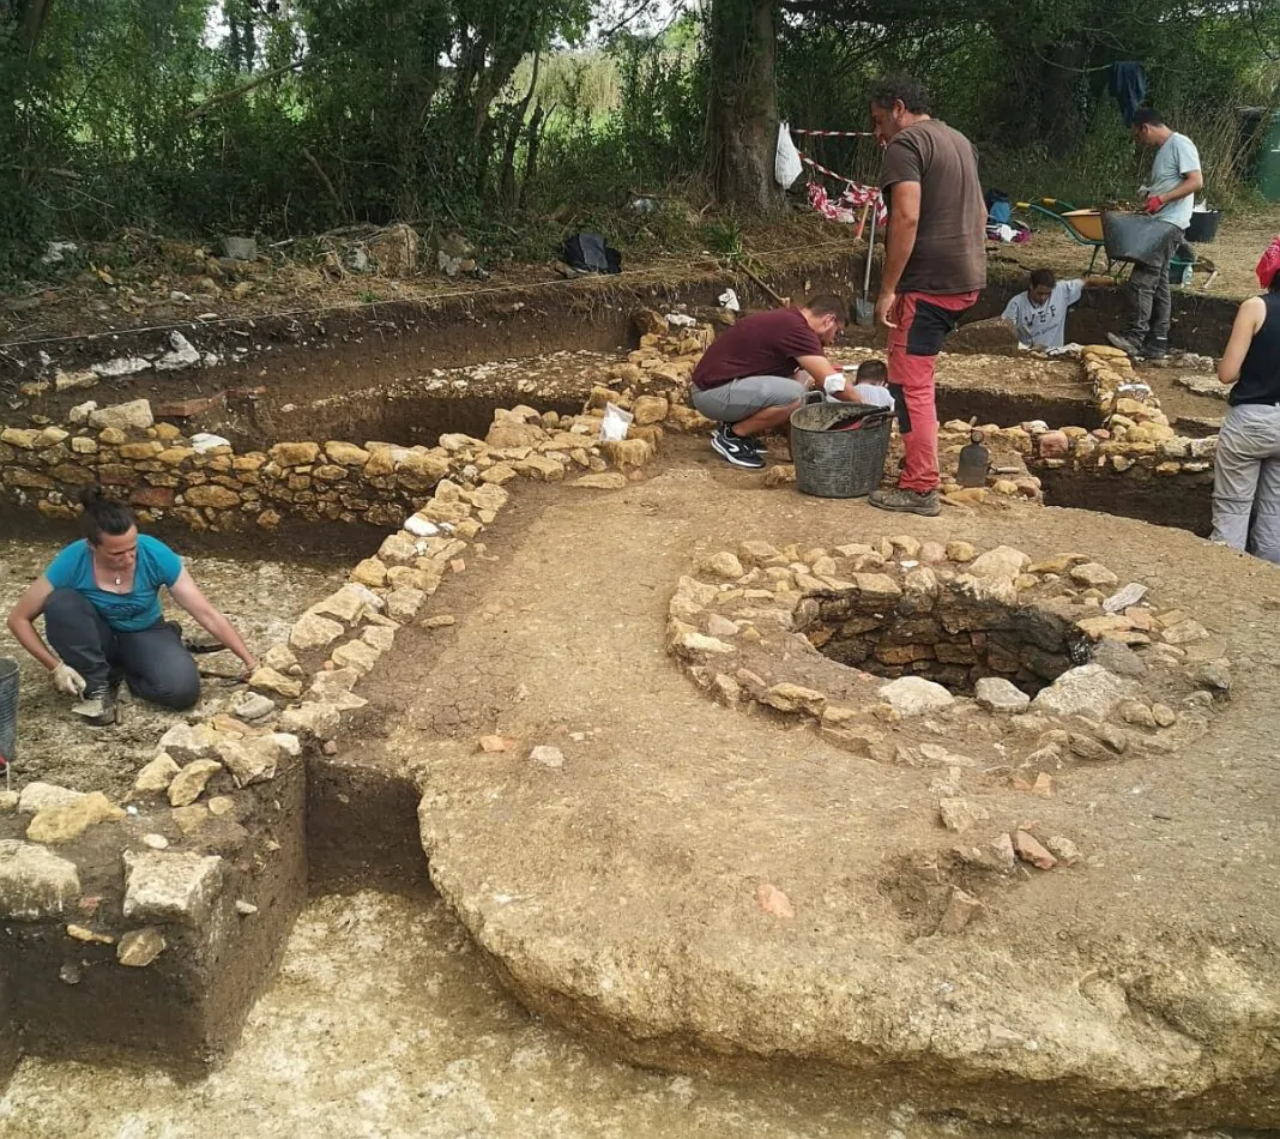 Fotografia da residência romana escavada na Espanha